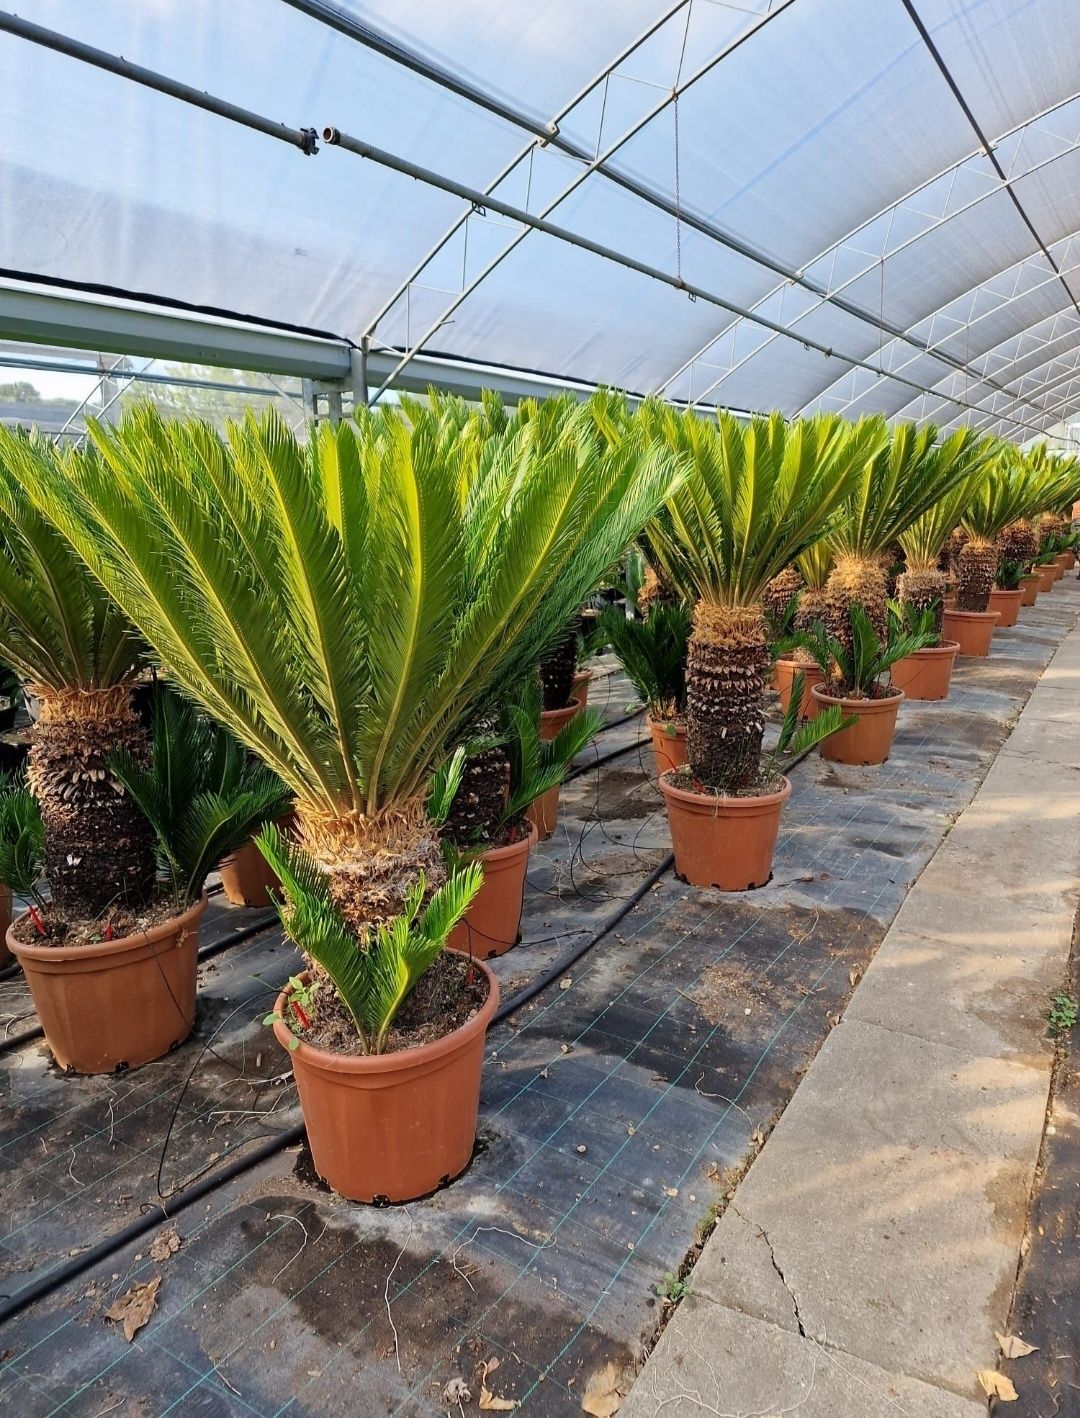 Palmieri 3 - 4m rezista la îngheț ( plante exotice ) vand, transport